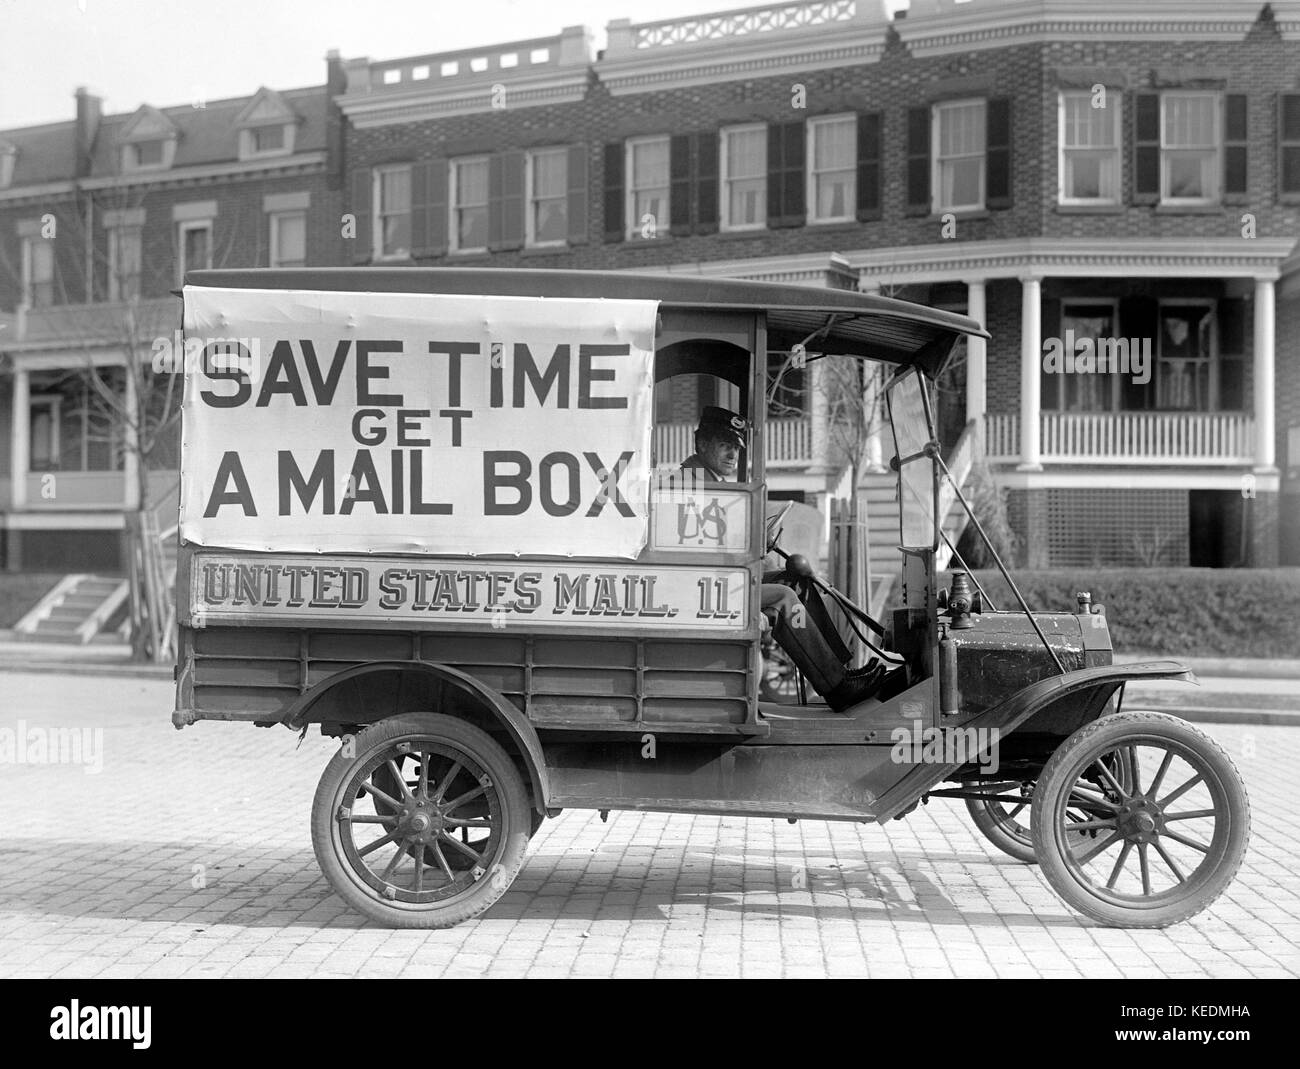 Bureau de poste wagons de messagerie 'enregistrer le temps obtenir une boîte aux lettres', Washington DC, USA, Harris et Ewing, 1916 Banque D'Images